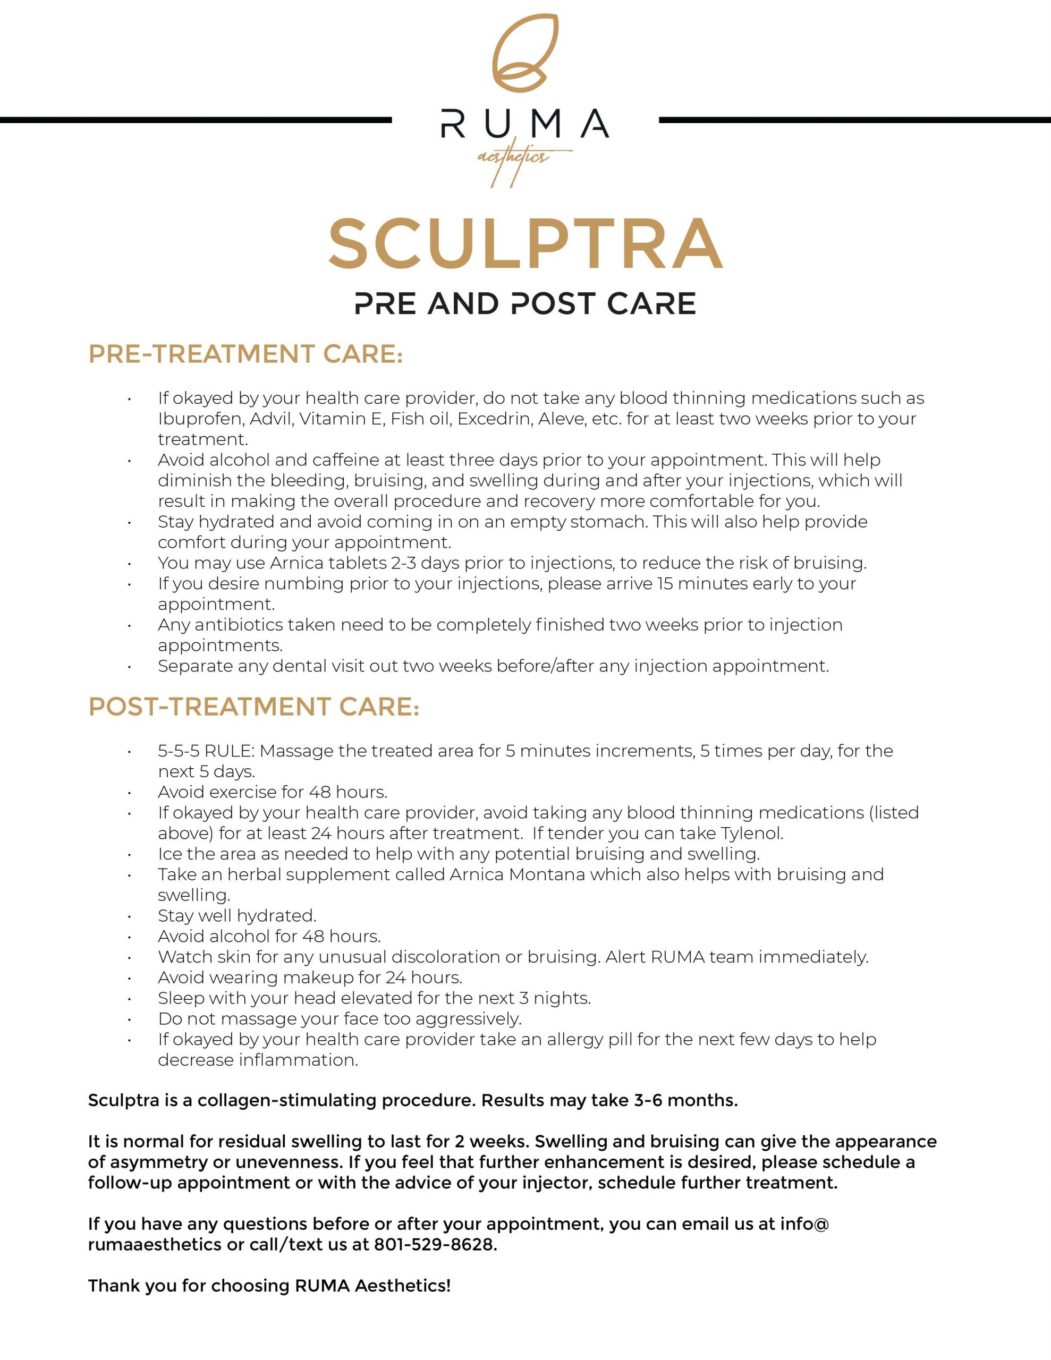 SculptraPrePostCare-Ruma Medical Aesthetics - UT - RumaAesthetic